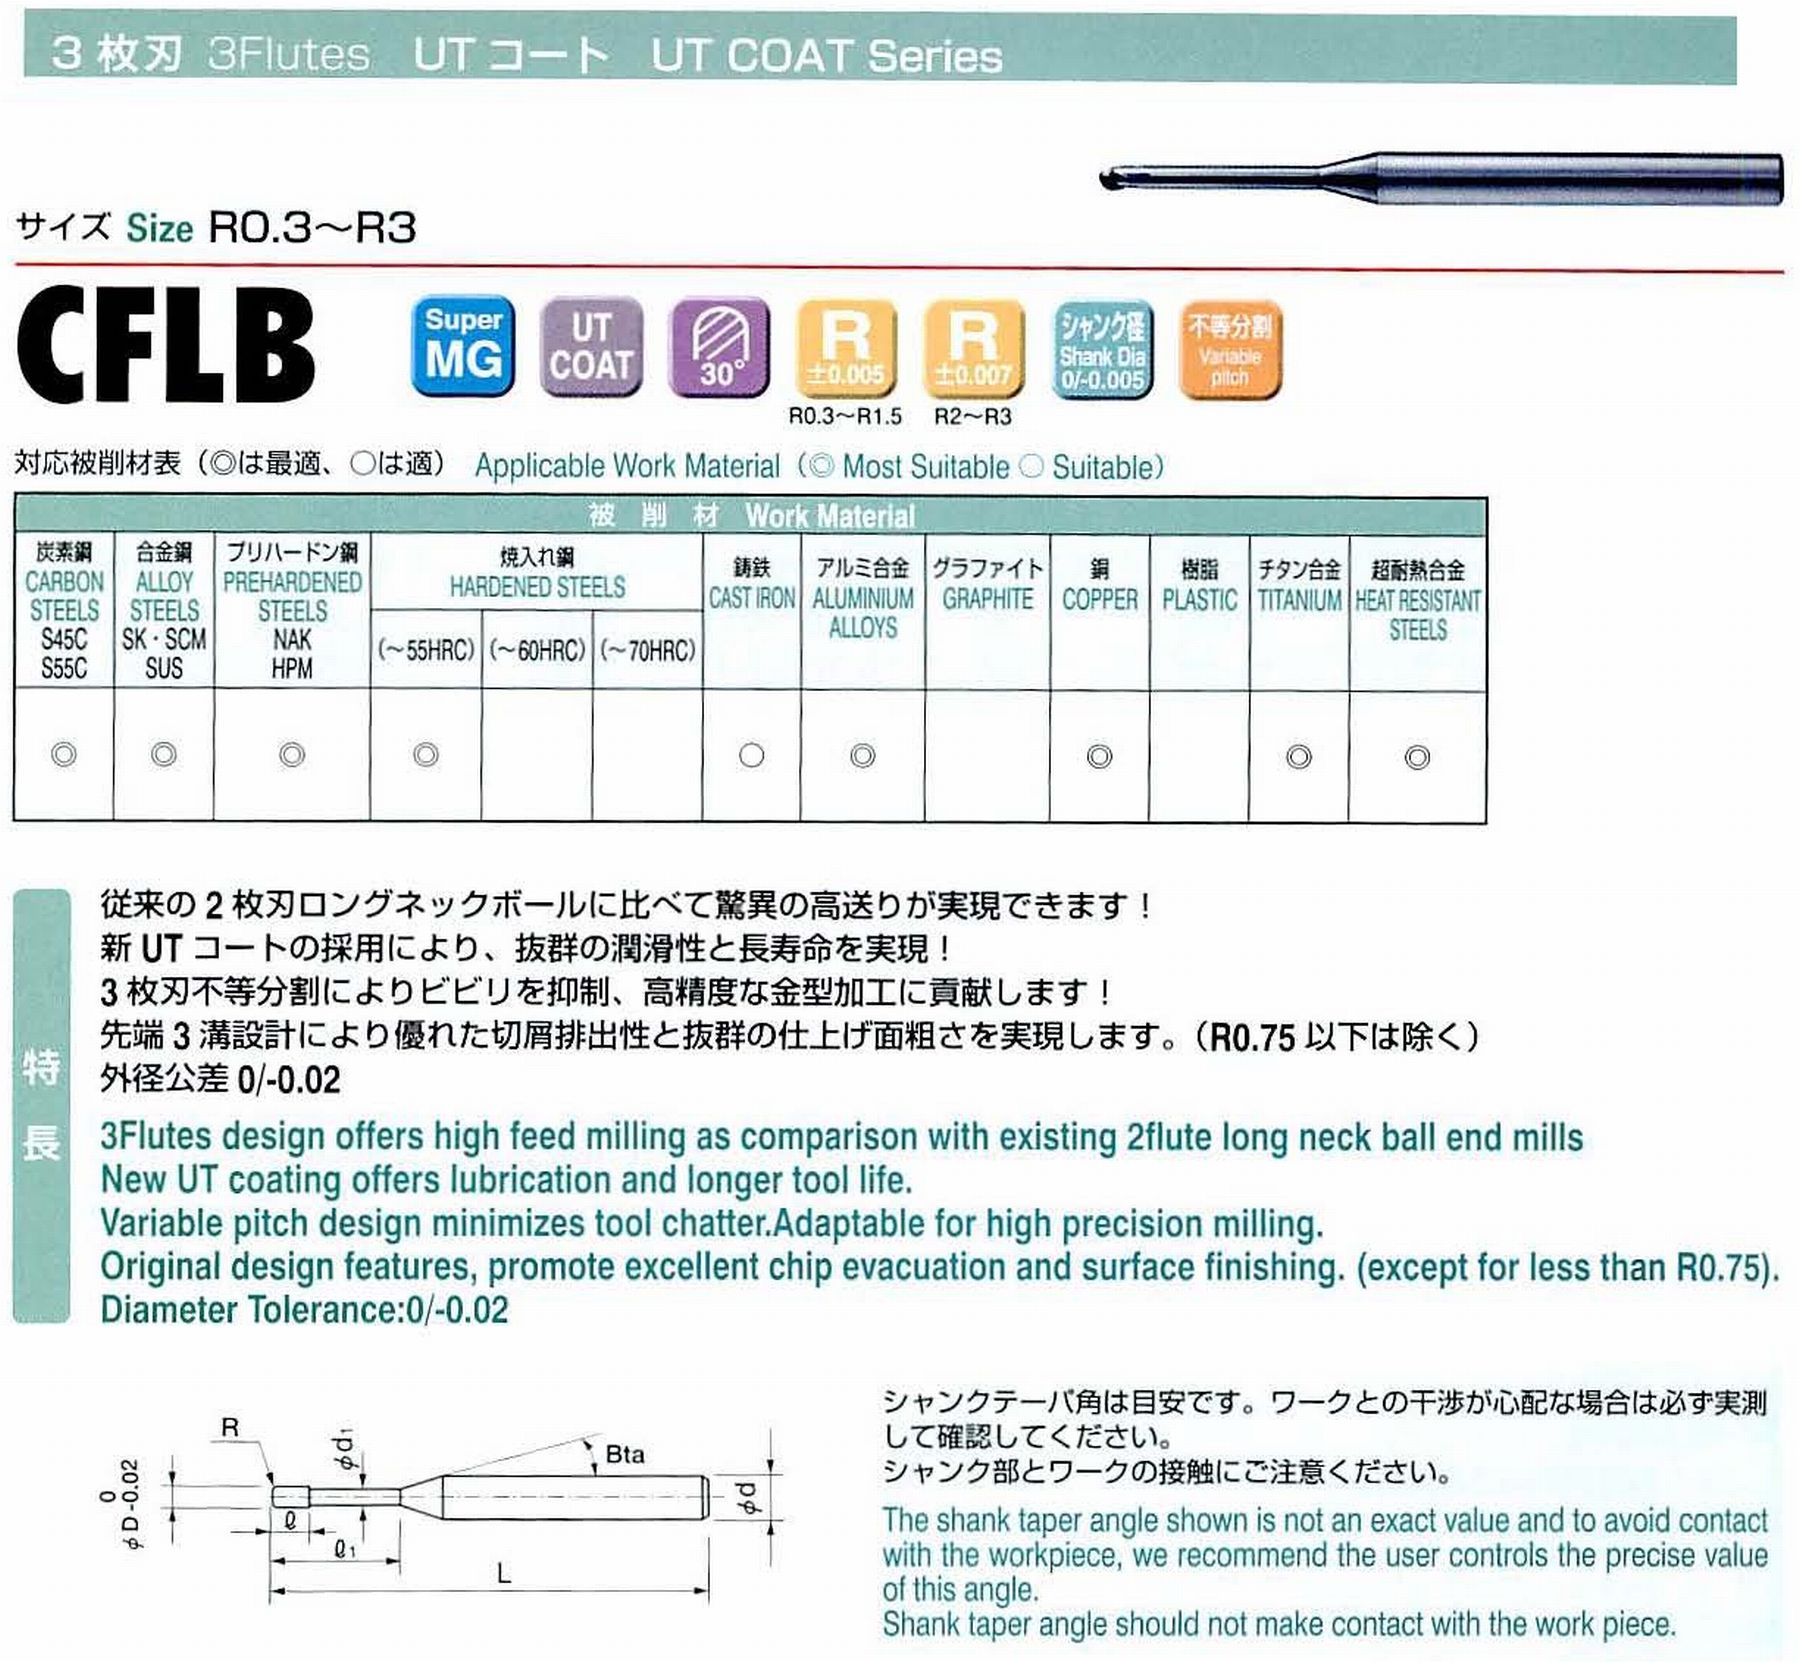 ユニオンツール 3枚刃 CFLB3030-120 ボール半径R1.5 有効長12 刃長2.4 首径2.73 シャンクテーパ角16° 全長60 シャンク径6